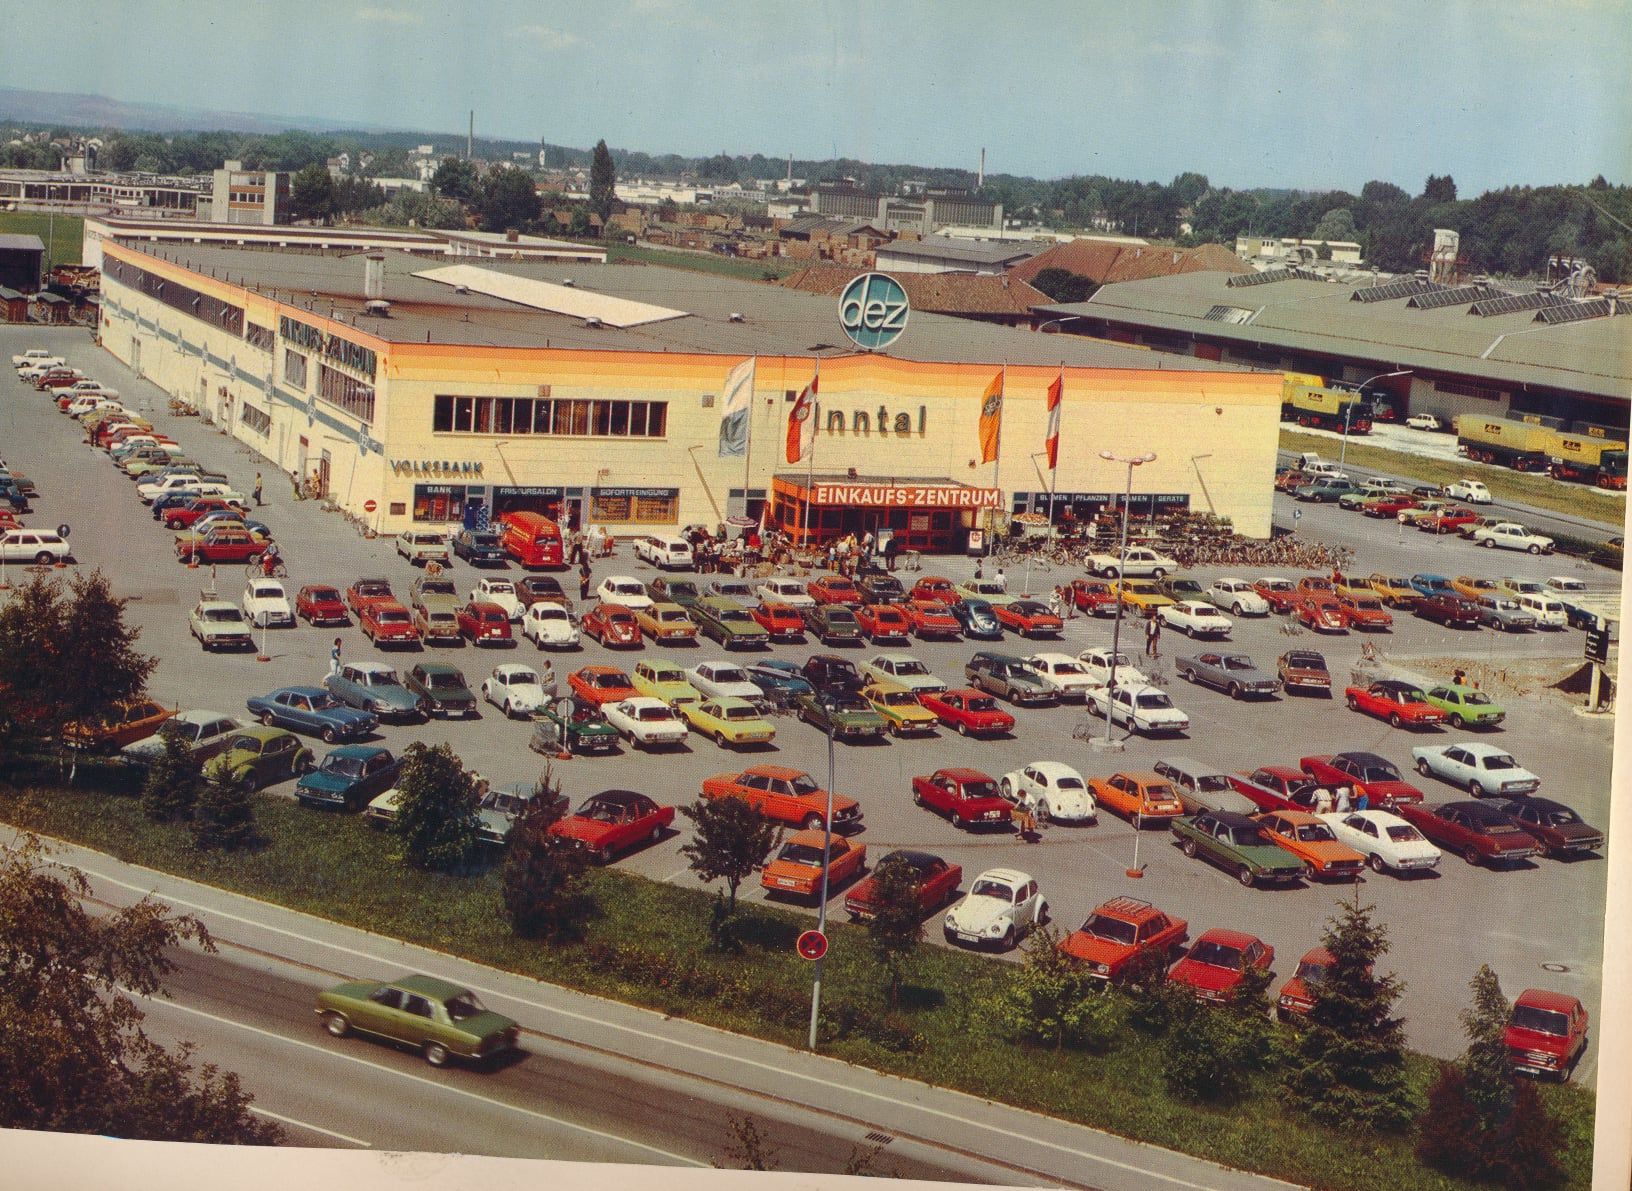 Parkplatz Einkaufszentrum mit vielen Autos - viele damals rot.